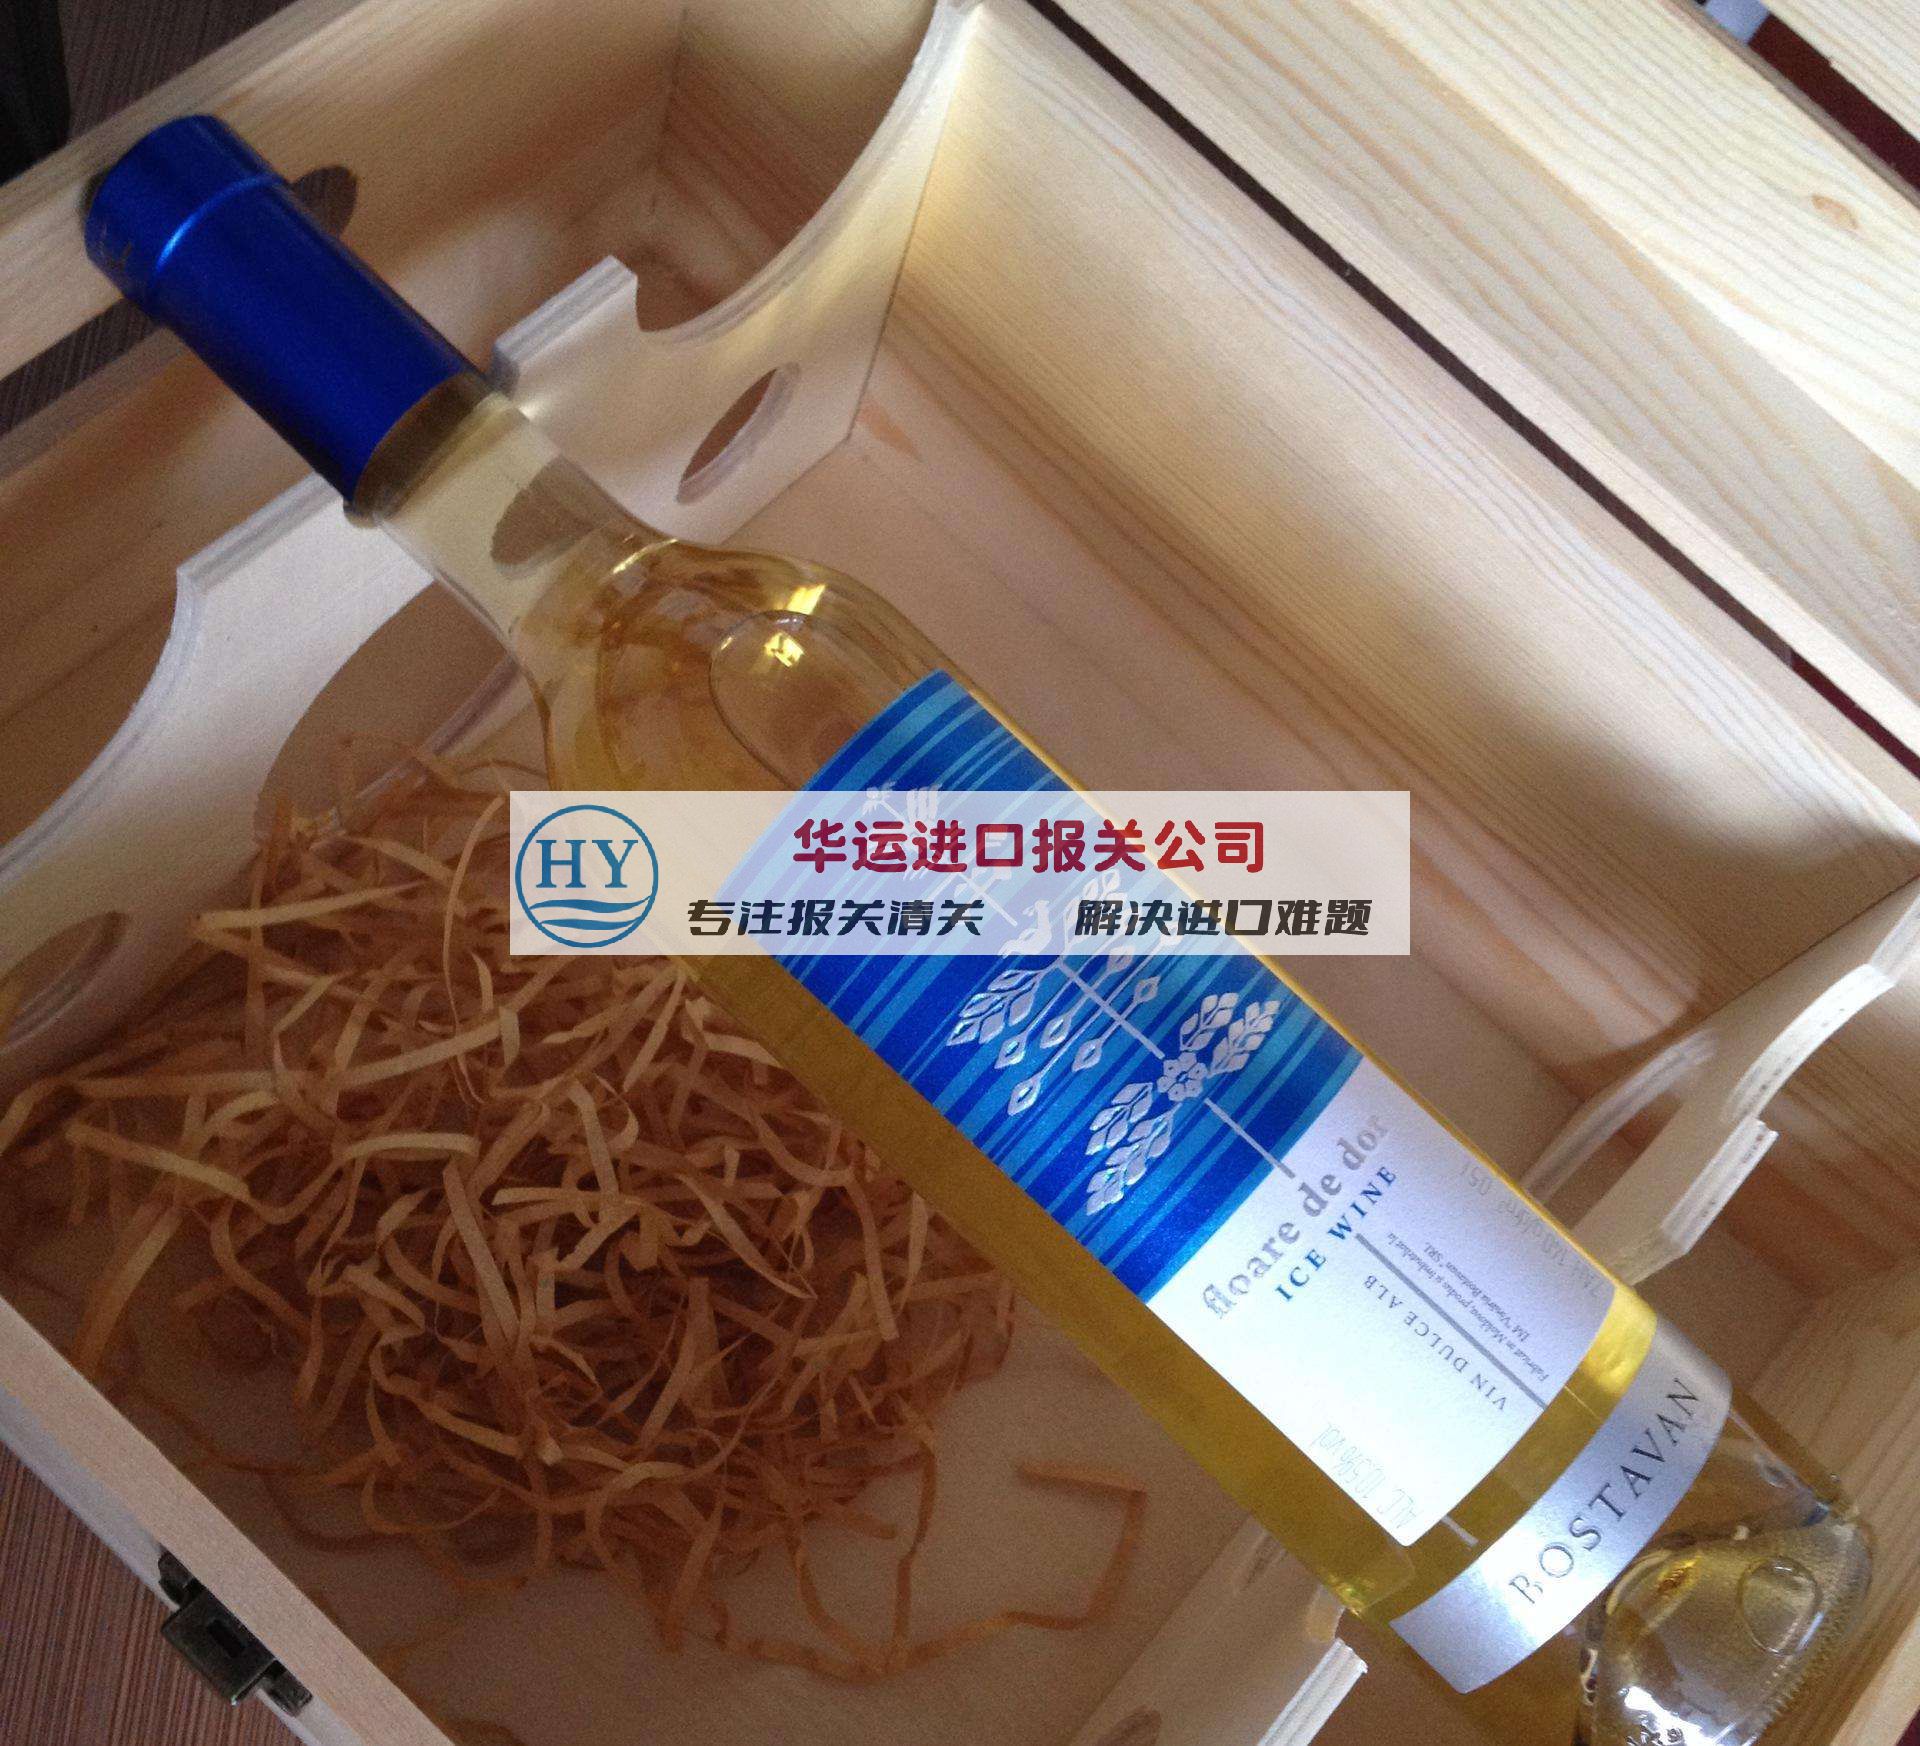 北京机场白兰地酒进口报关公司及清关指引_烈酒进口了解多少